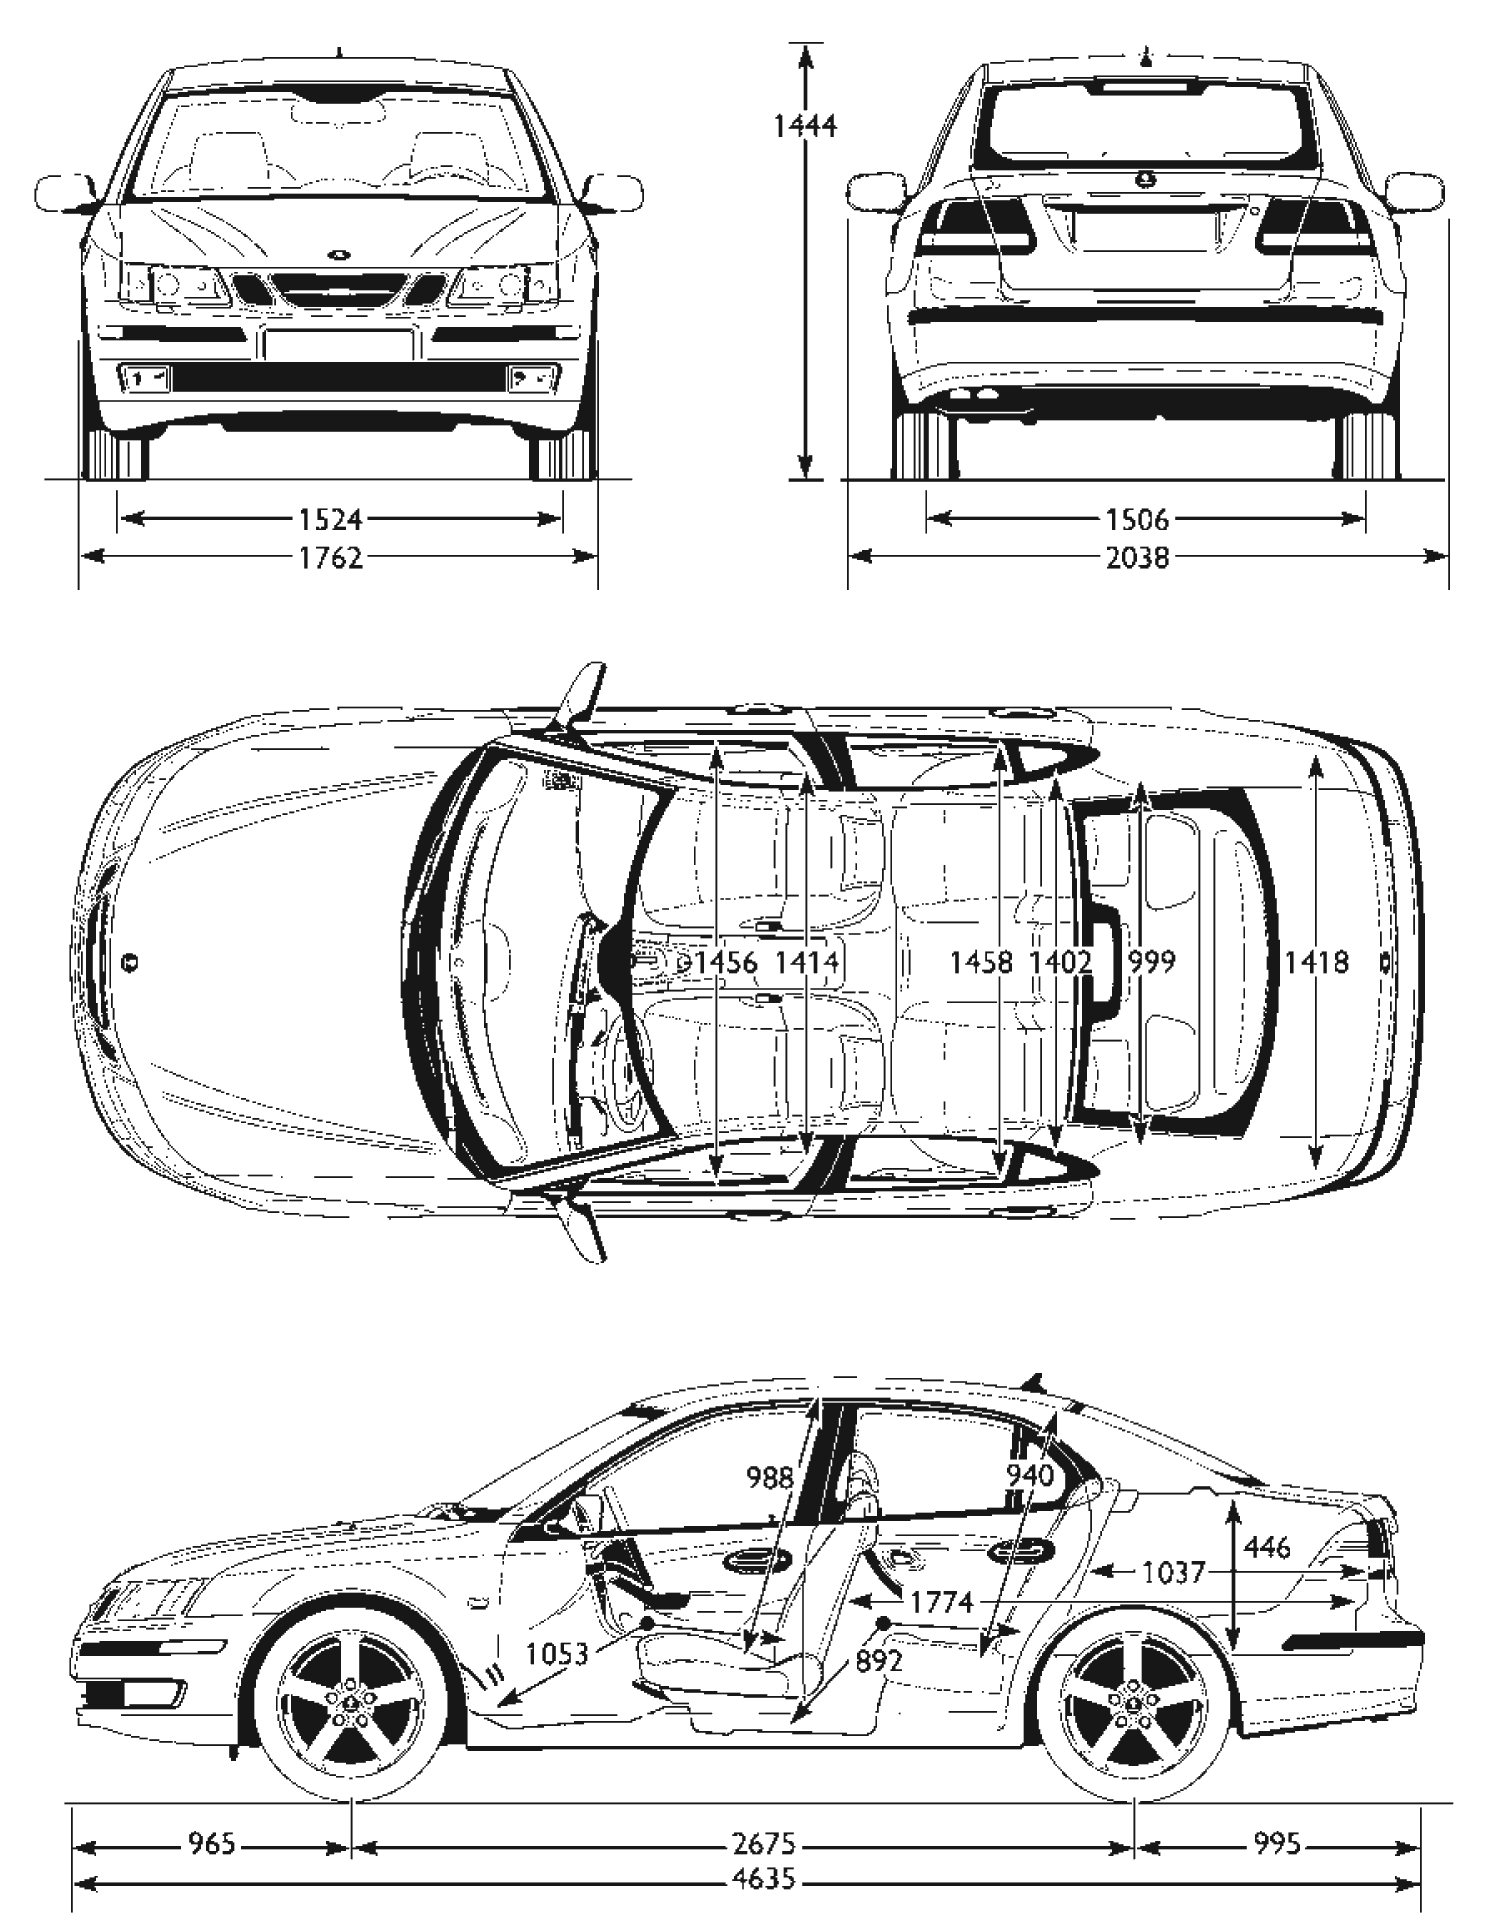 Saab 9-3 blueprints